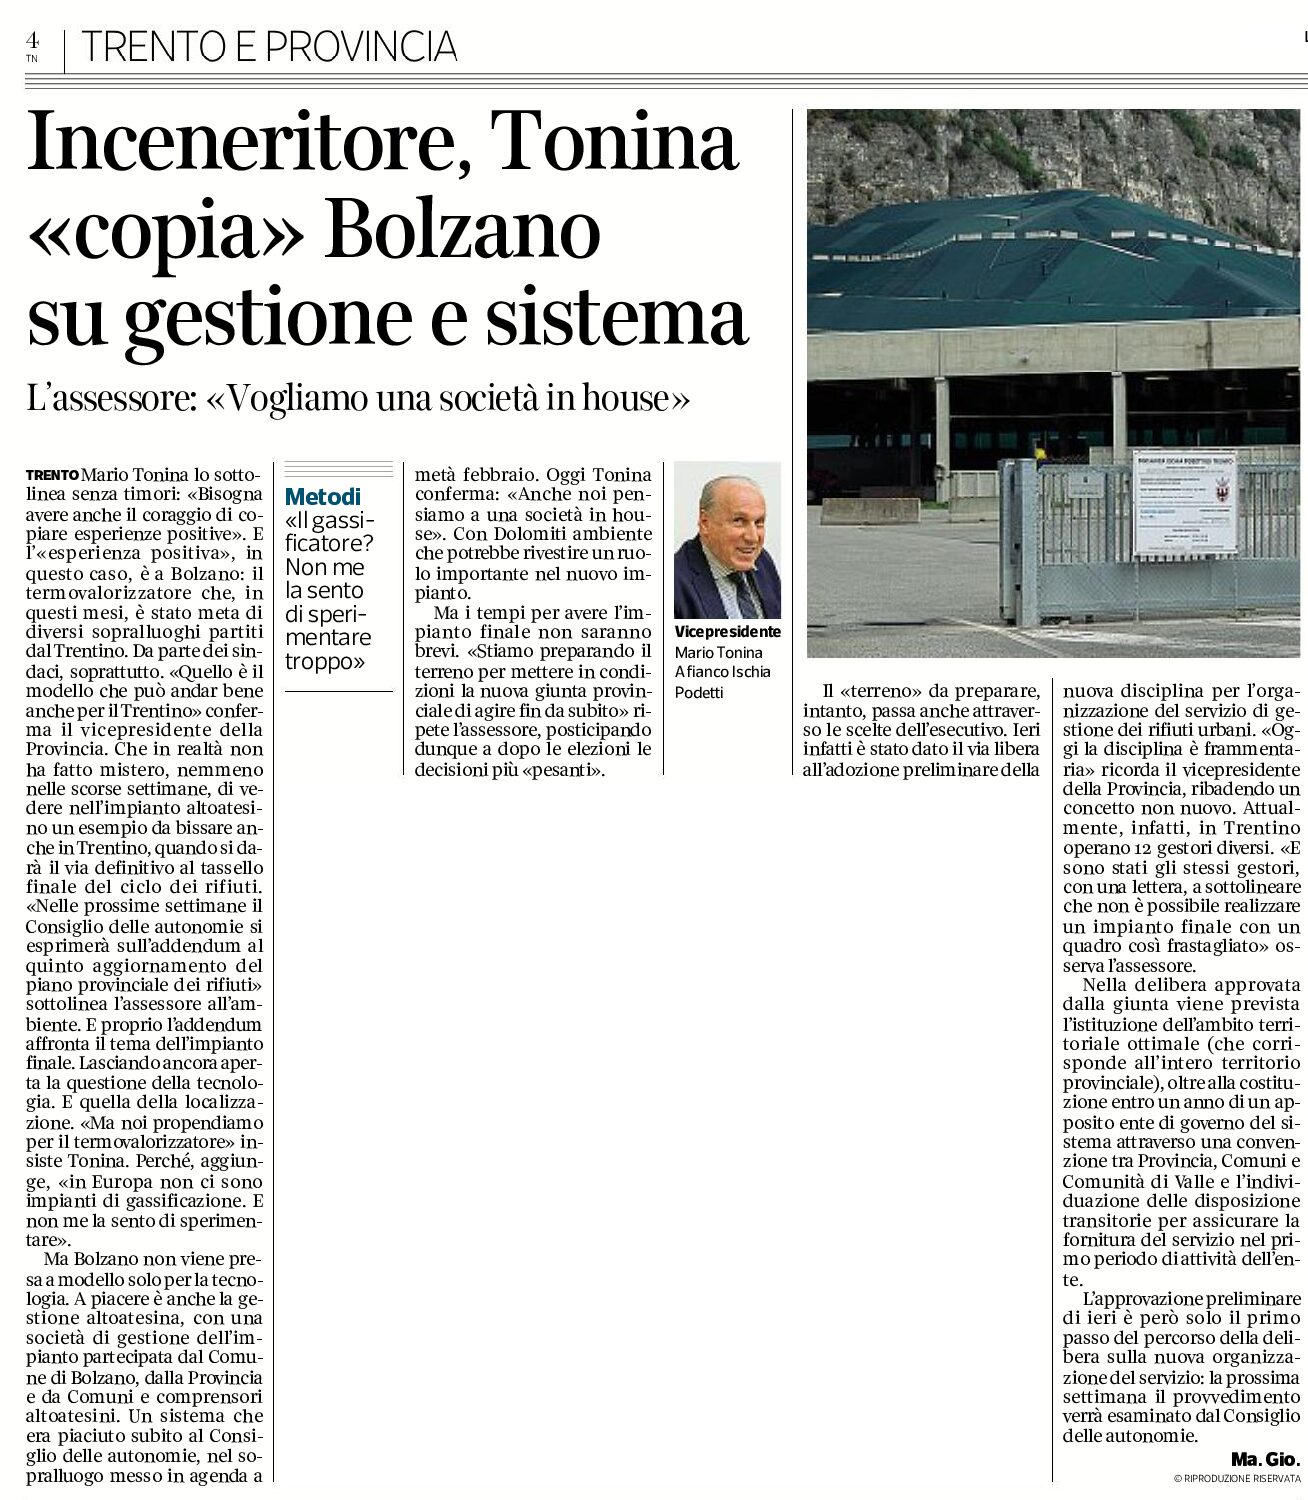 Inceneritore: Tonina “copia” Bolzano su gestione e sistema